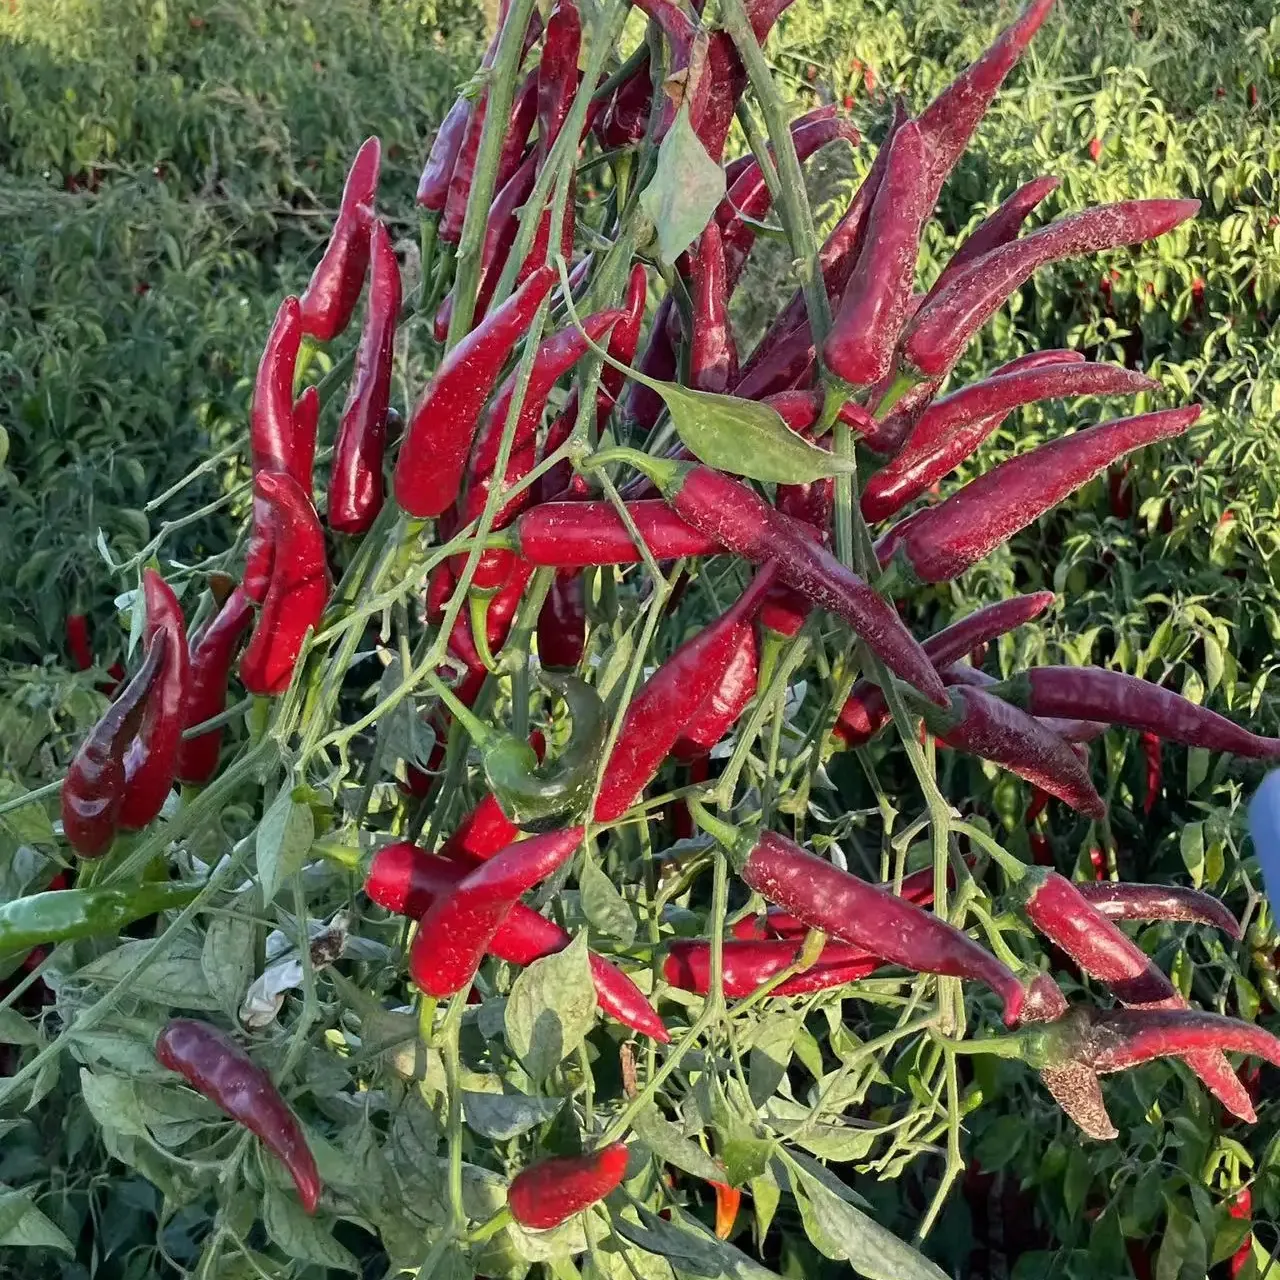 Professionell angebaute Pfeffer für Export süße Paprika rot heißer Chili Pulver Abschnitt Samen